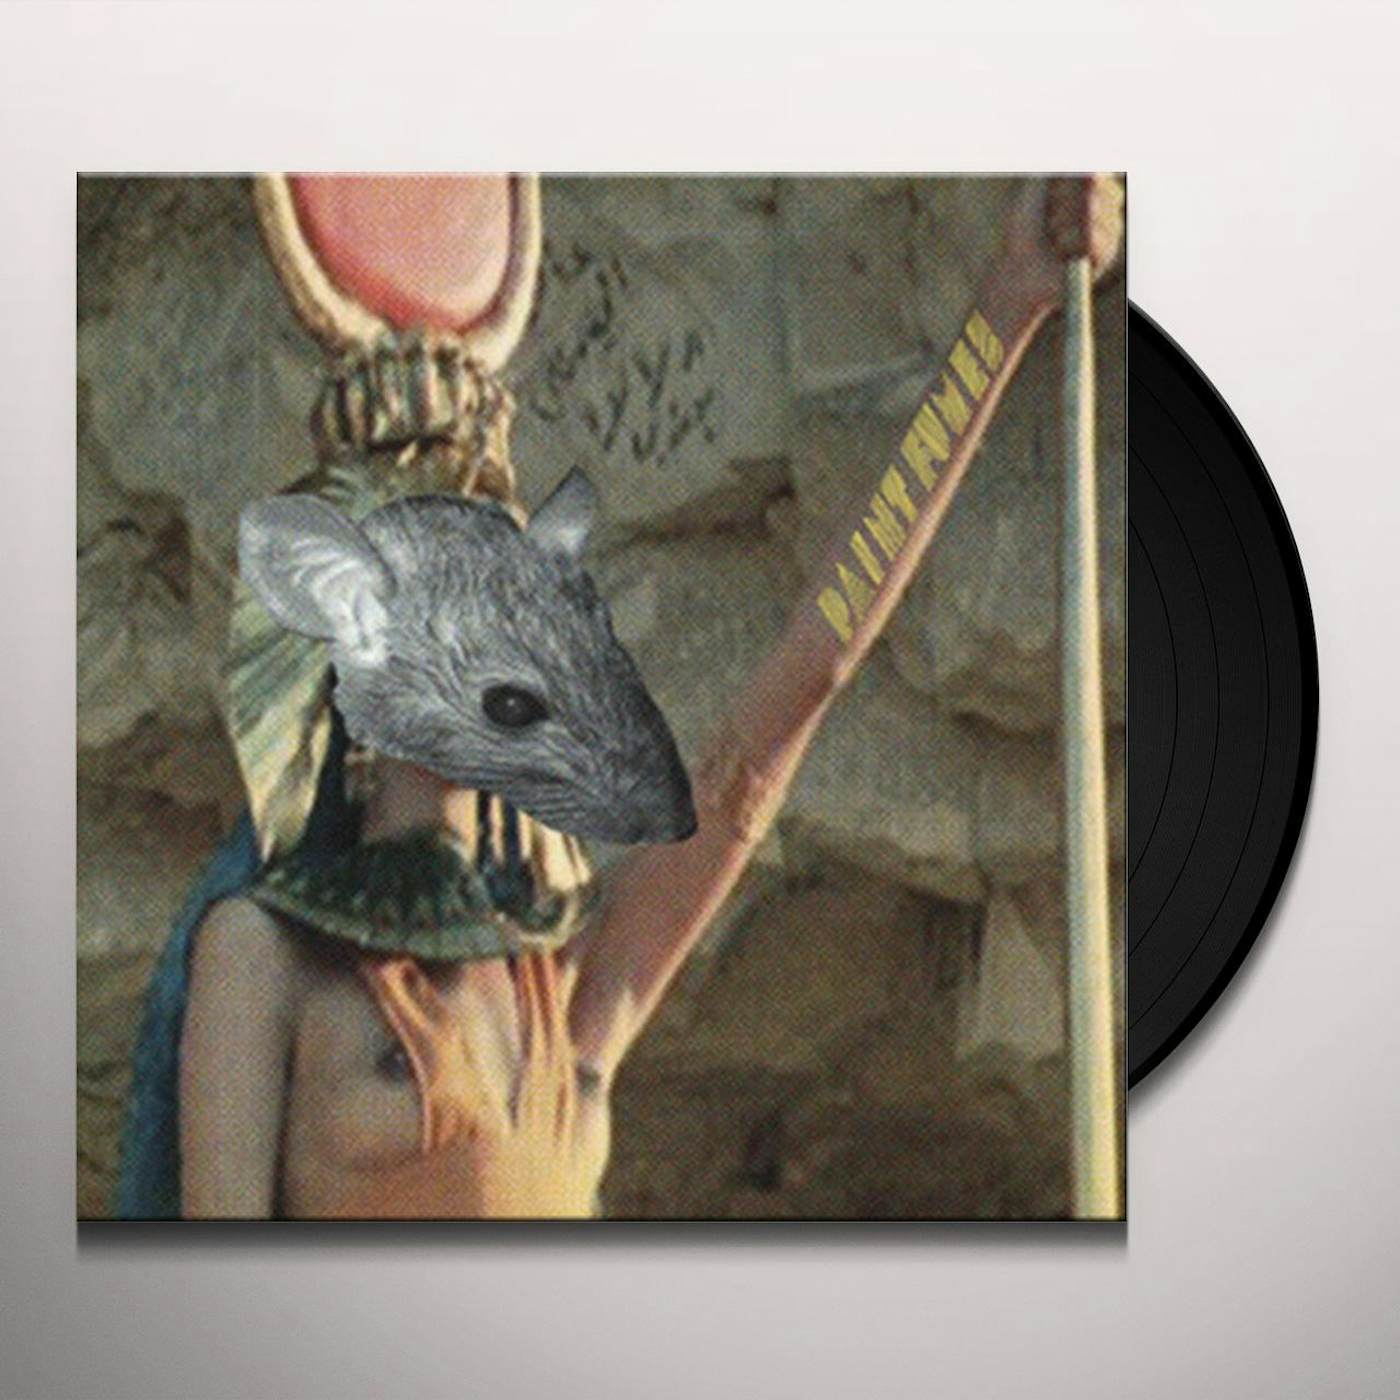 Paint Fumes Egyptian Rats Vinyl Record